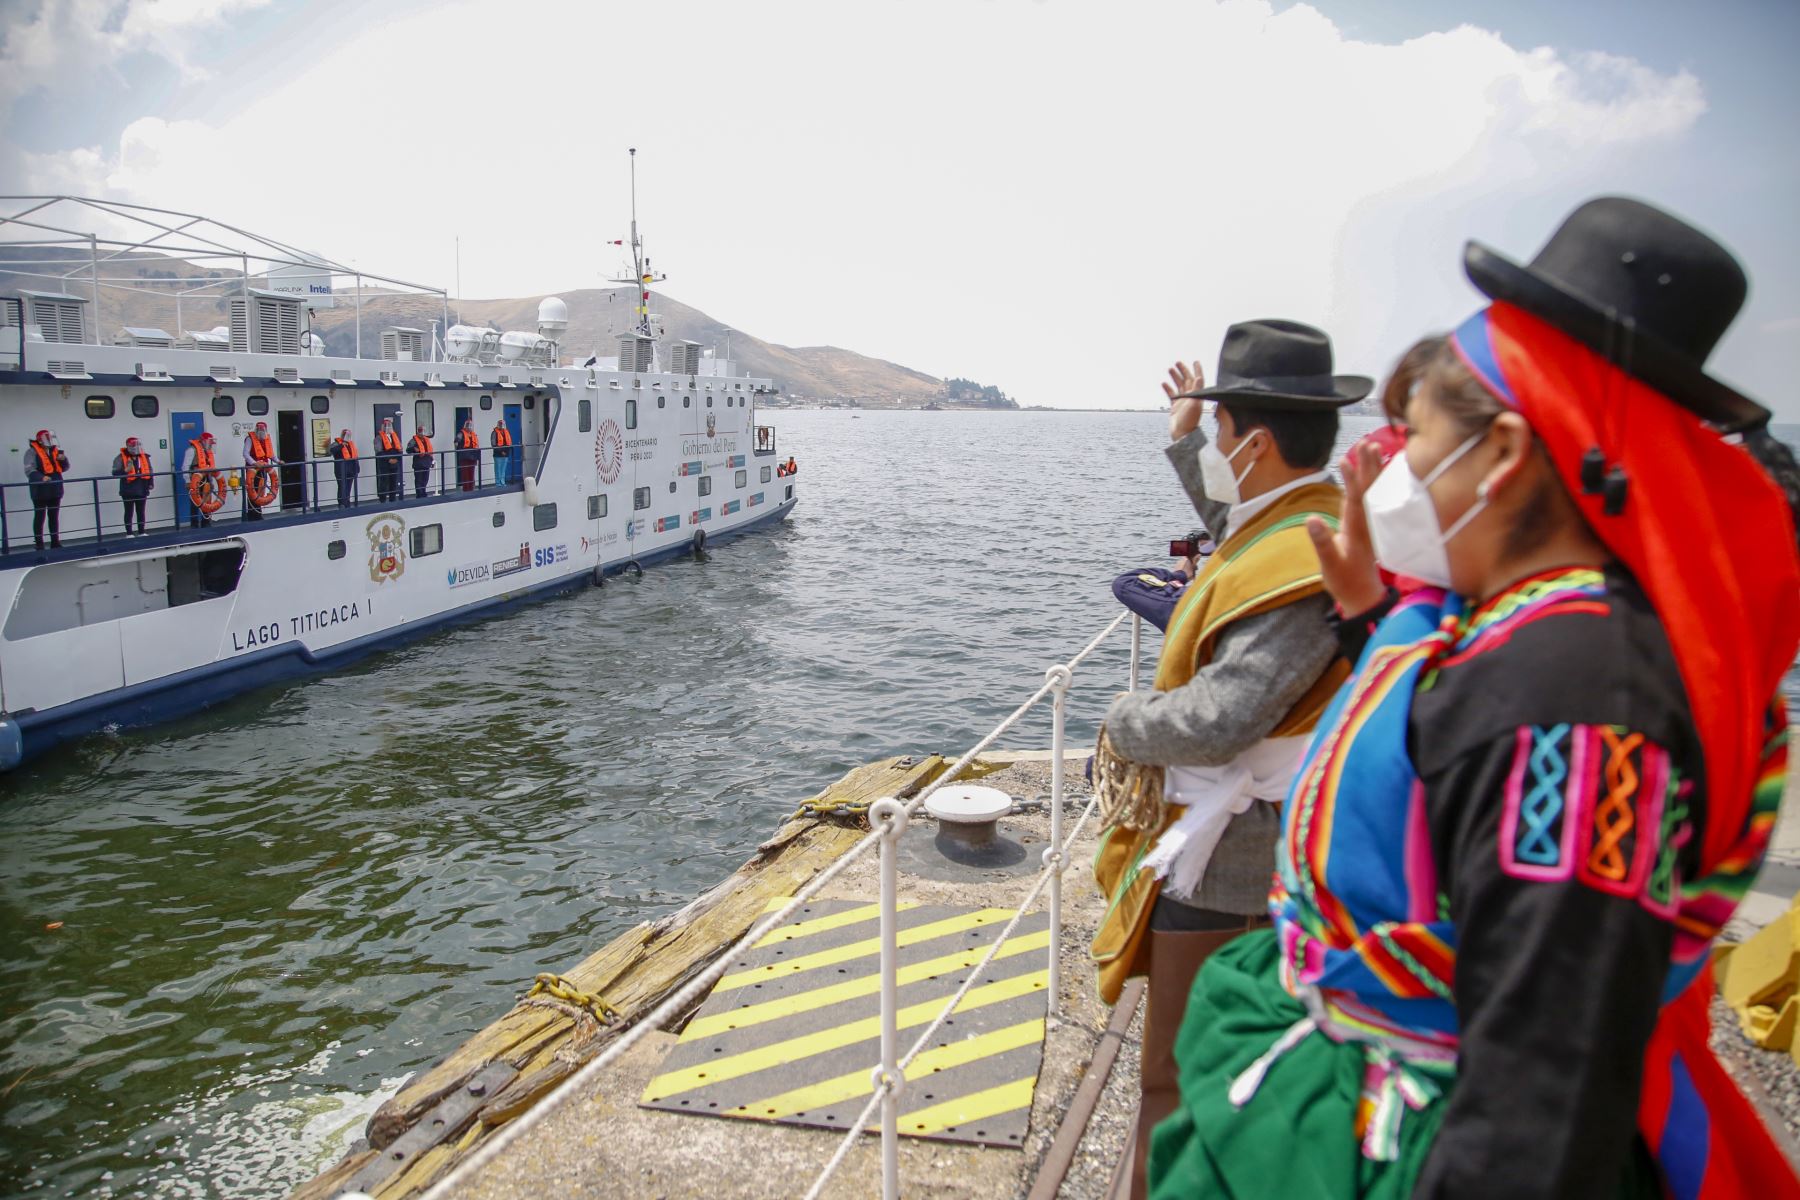 La PIAS Lago Titicaca I navegará por 30 días con una brigada multisectorial de 10 profesionales a bordo, quienes pasaron las pruebas moleculares de descarte de coronavirus y guardaron la cuarentena previa respectiva.